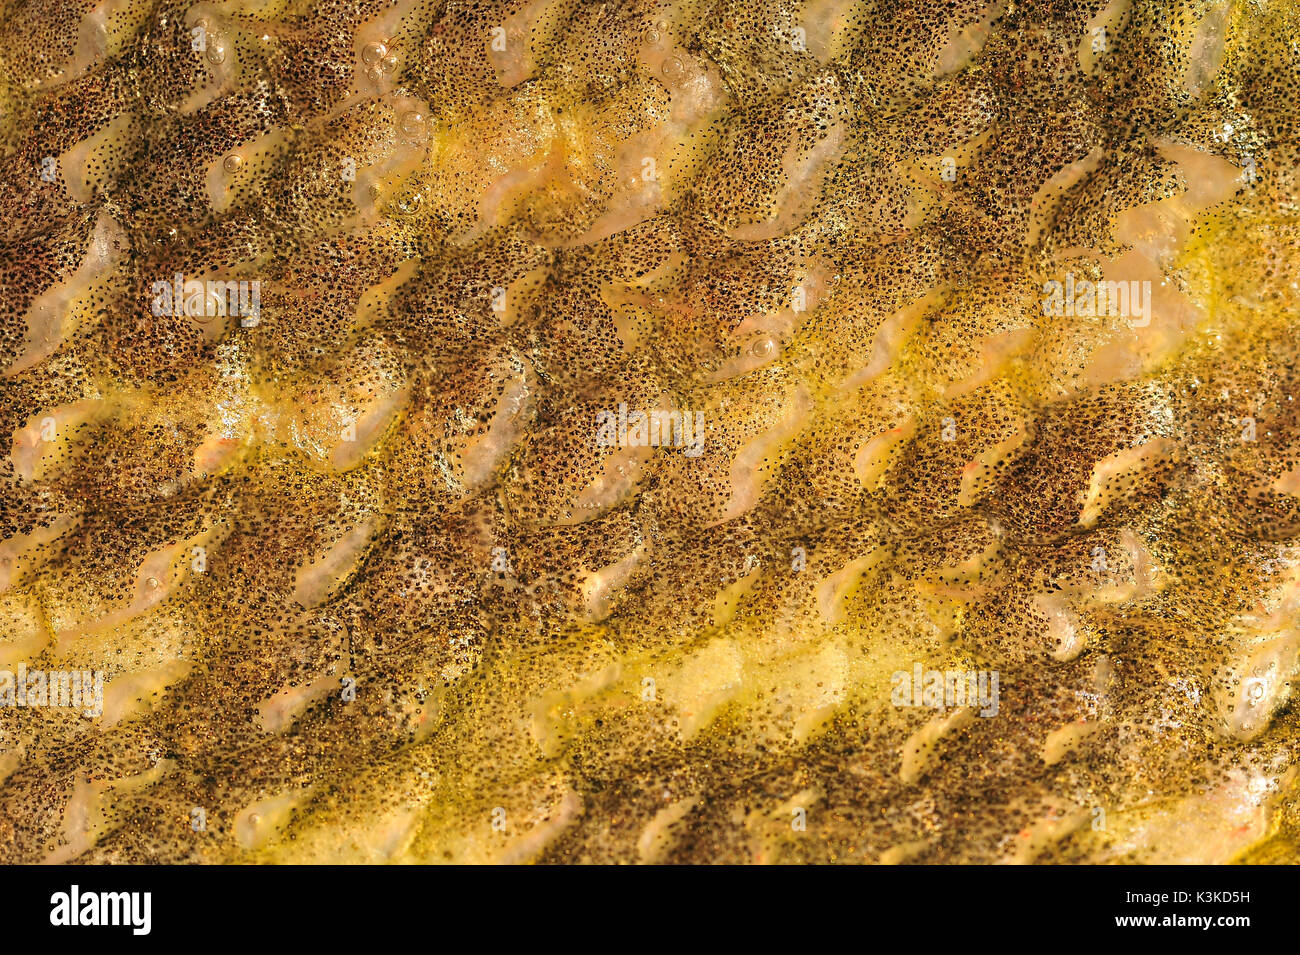 Die Schale von einem Hecht mit seinem Fisch schuppen und Pigmenten. Stockfoto